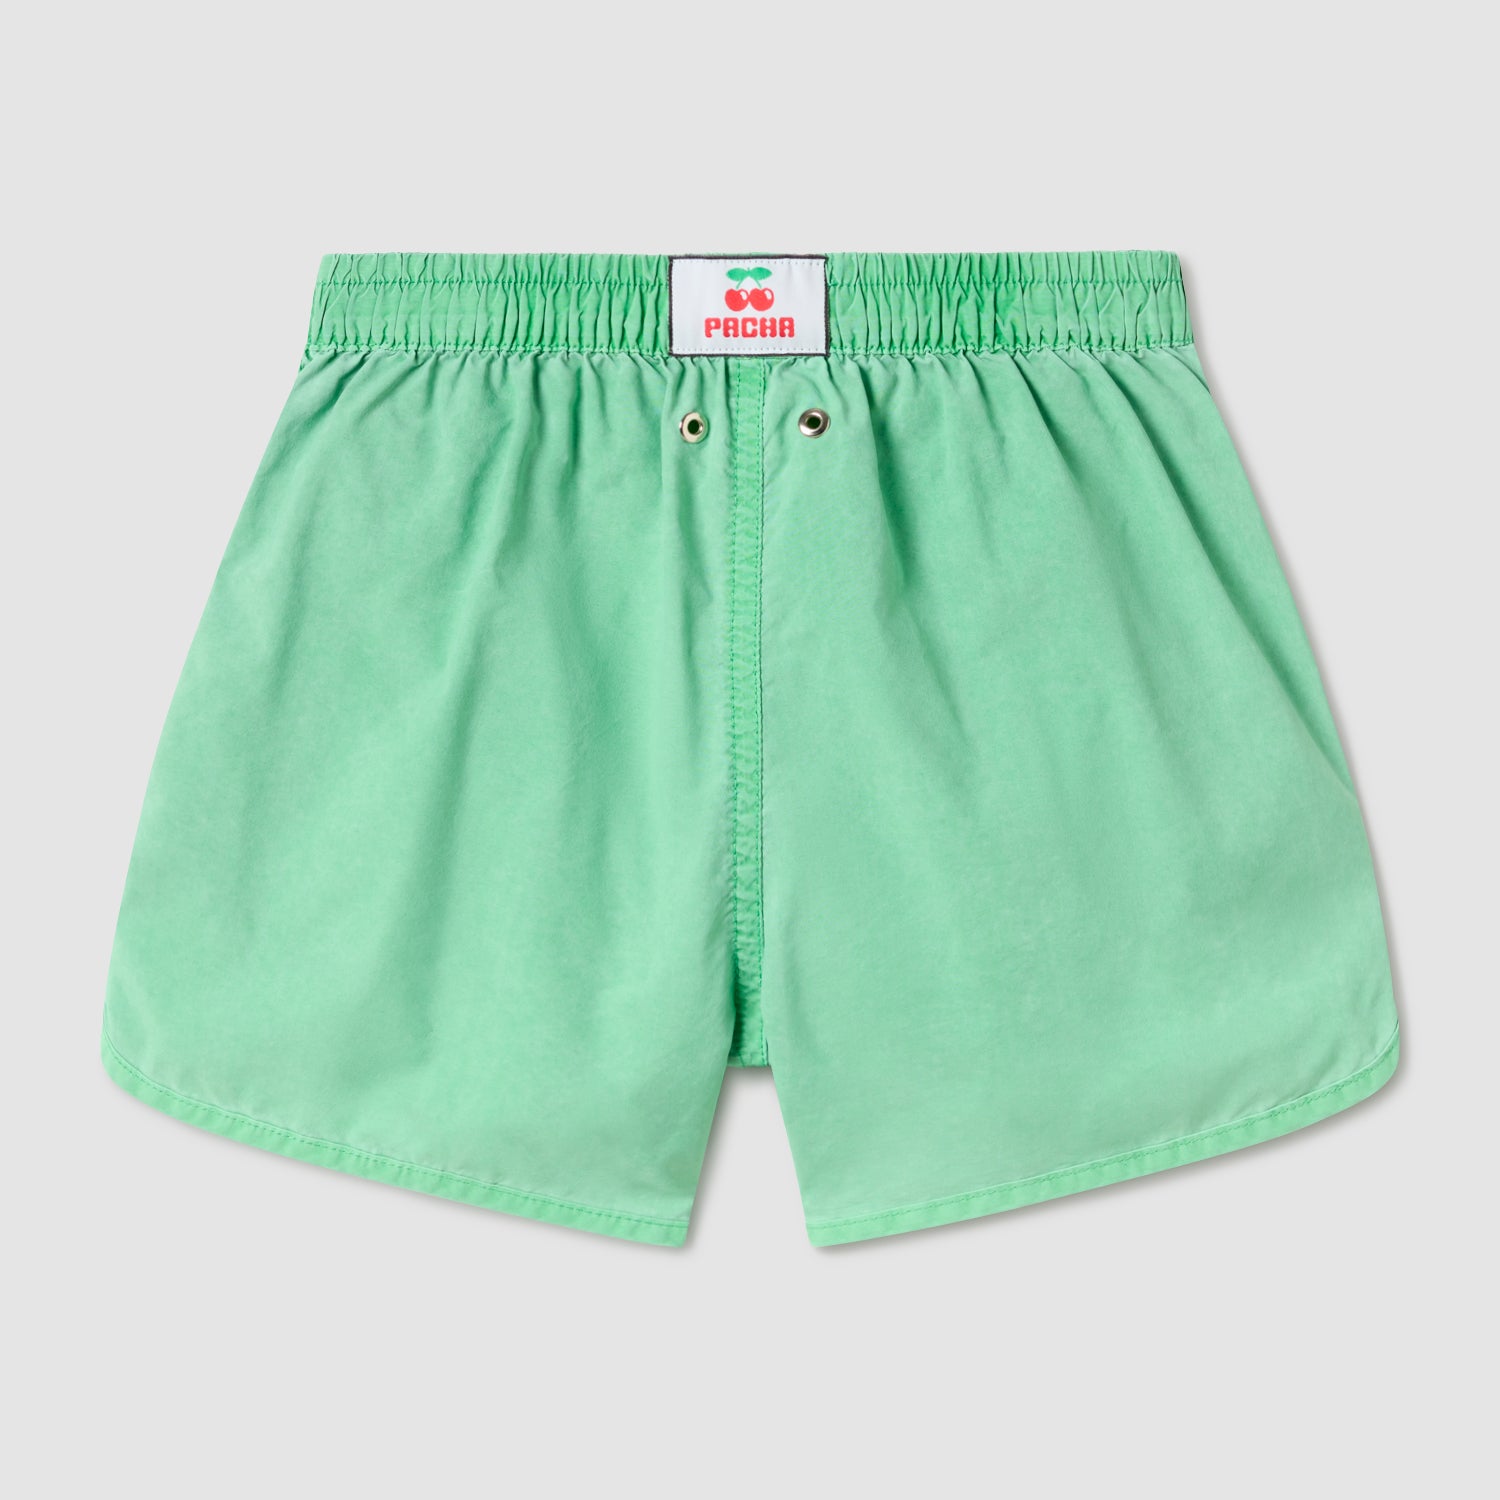 Grüner Jungen-Badeanzug – Nachhaltiges Produkt